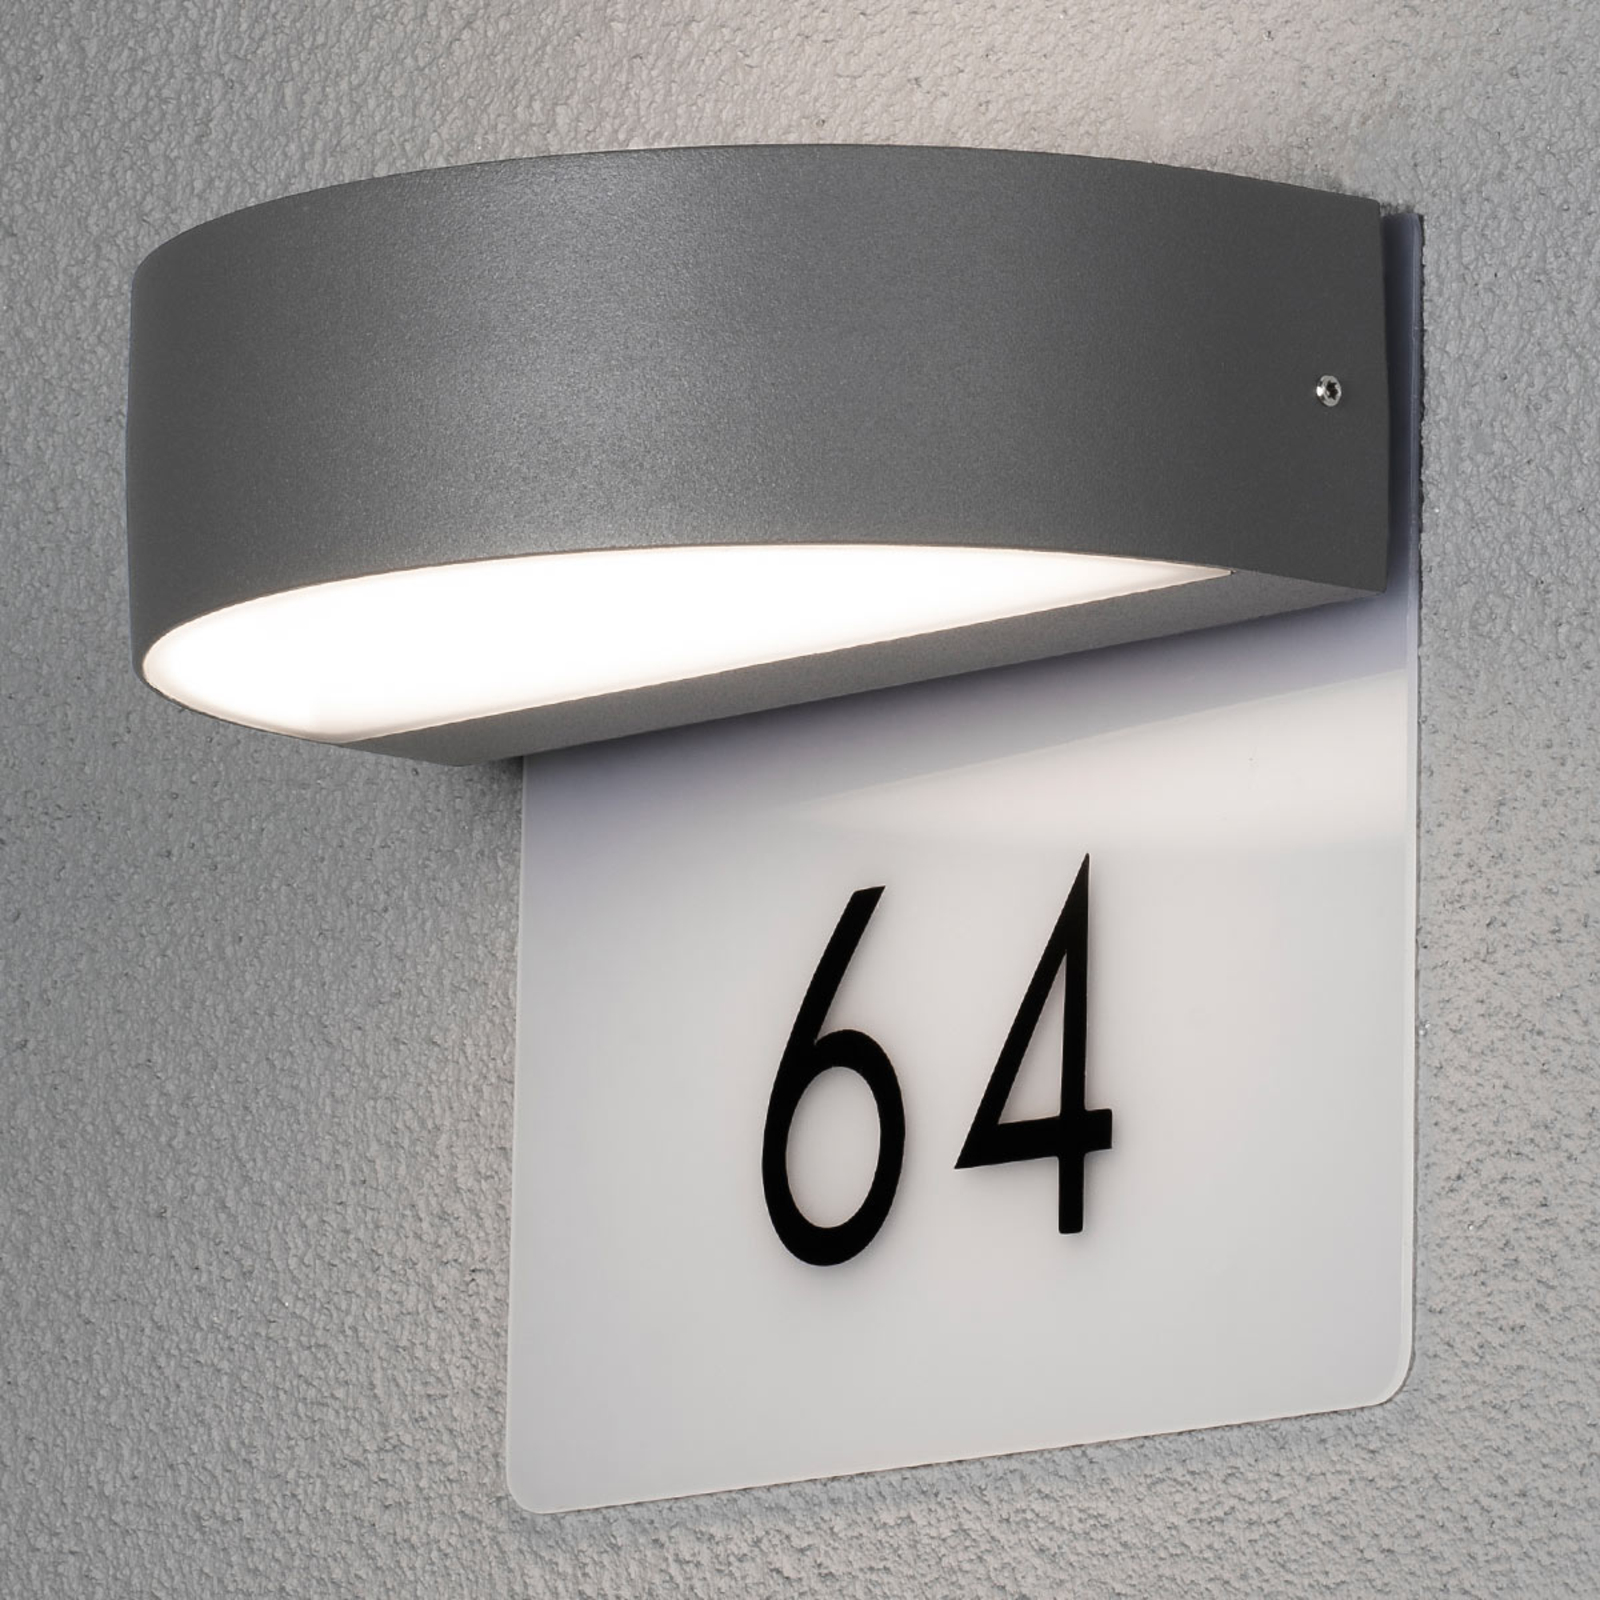 Modern LED házszámlámpa Monza számokkal együtt